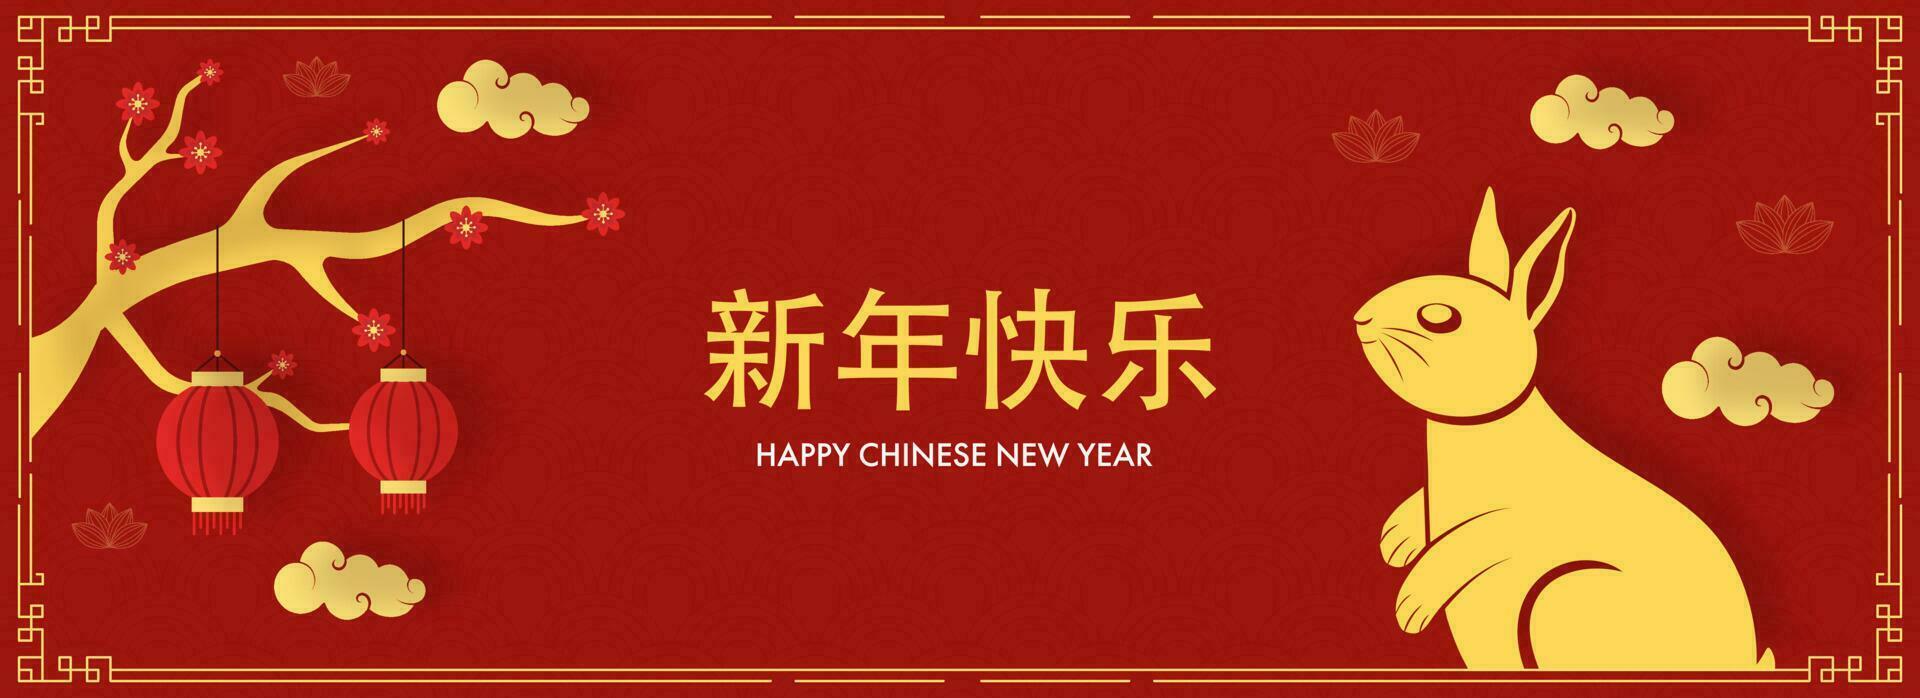 gelukkig Chinese nieuw jaar mandarijn- tekst met schattig konijn, lantaarns hangen, sakura Afdeling Aan verbrand rood semi cirkel patroon achtergrond. vector